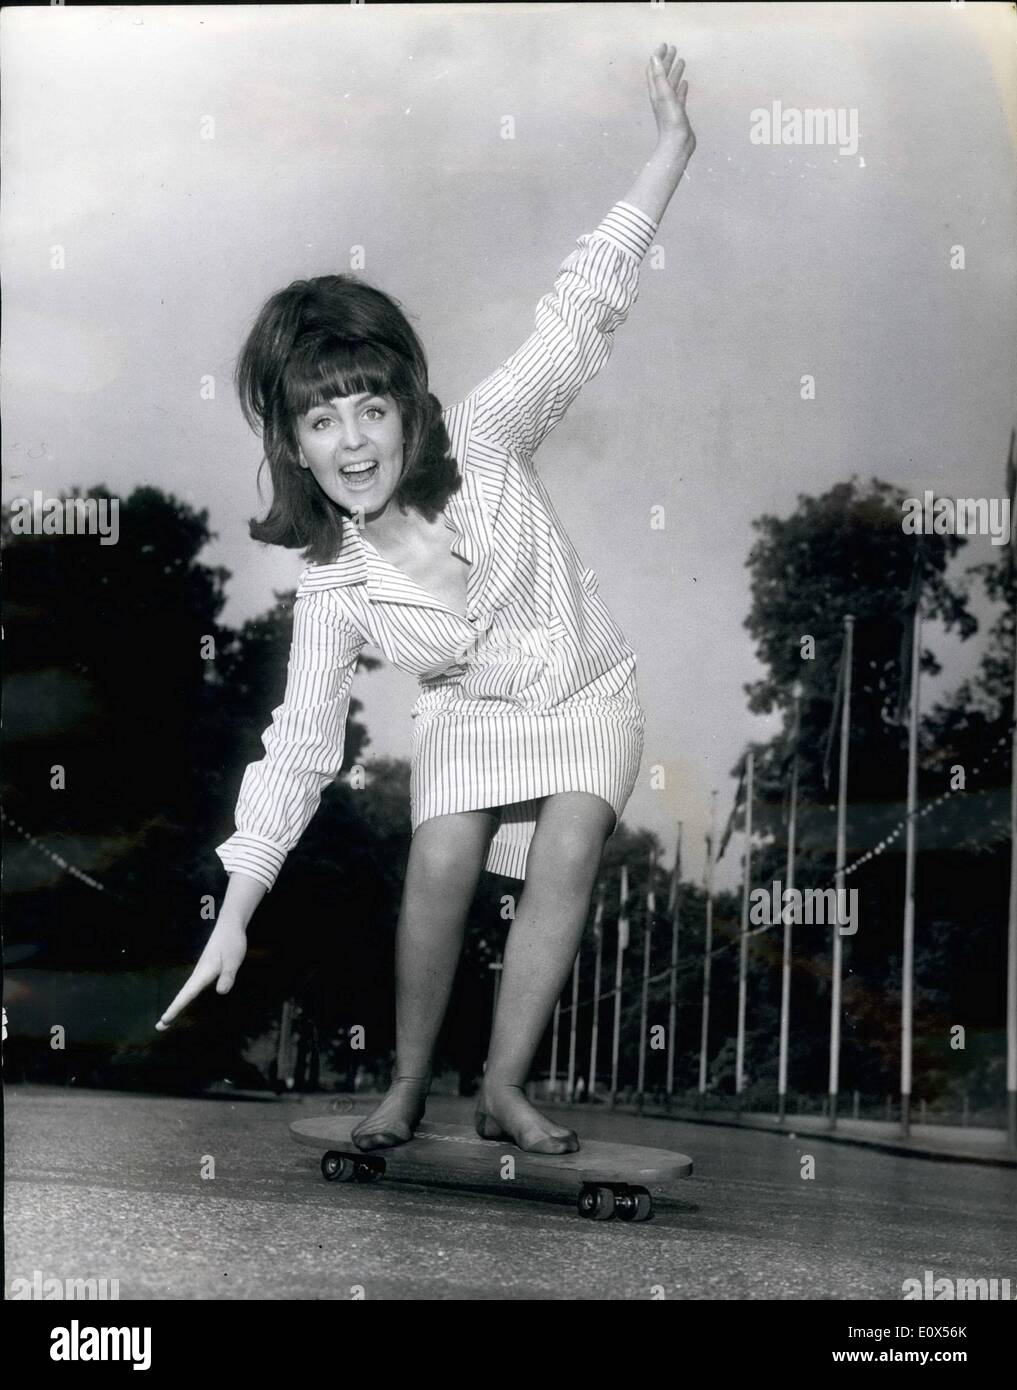 Juin 06, 1965 - les sensations du surf sans eau. Le skateboard est à Londres : le skate, qui est un best-seller en Amérique, est une sorte de planche de surf sur deux paires de patin à roues. Il peut être utilisé comme un enfant d'Erdogan, ou lorsque la descente est bonne, va mettre les pieds sur le bord et laissez-vous aller. Juste pour vous déplacer vers le côté poids. L'actrice Pauline Collins, 22 ans, a pris hier ses chaussures pour essayer le skateboard dans Battersea Park, Londres. Elle a perdu son équilibre quelques fois, mais fut rapidement le coup de lui et a dit ''C'est très amusant'' Banque D'Images